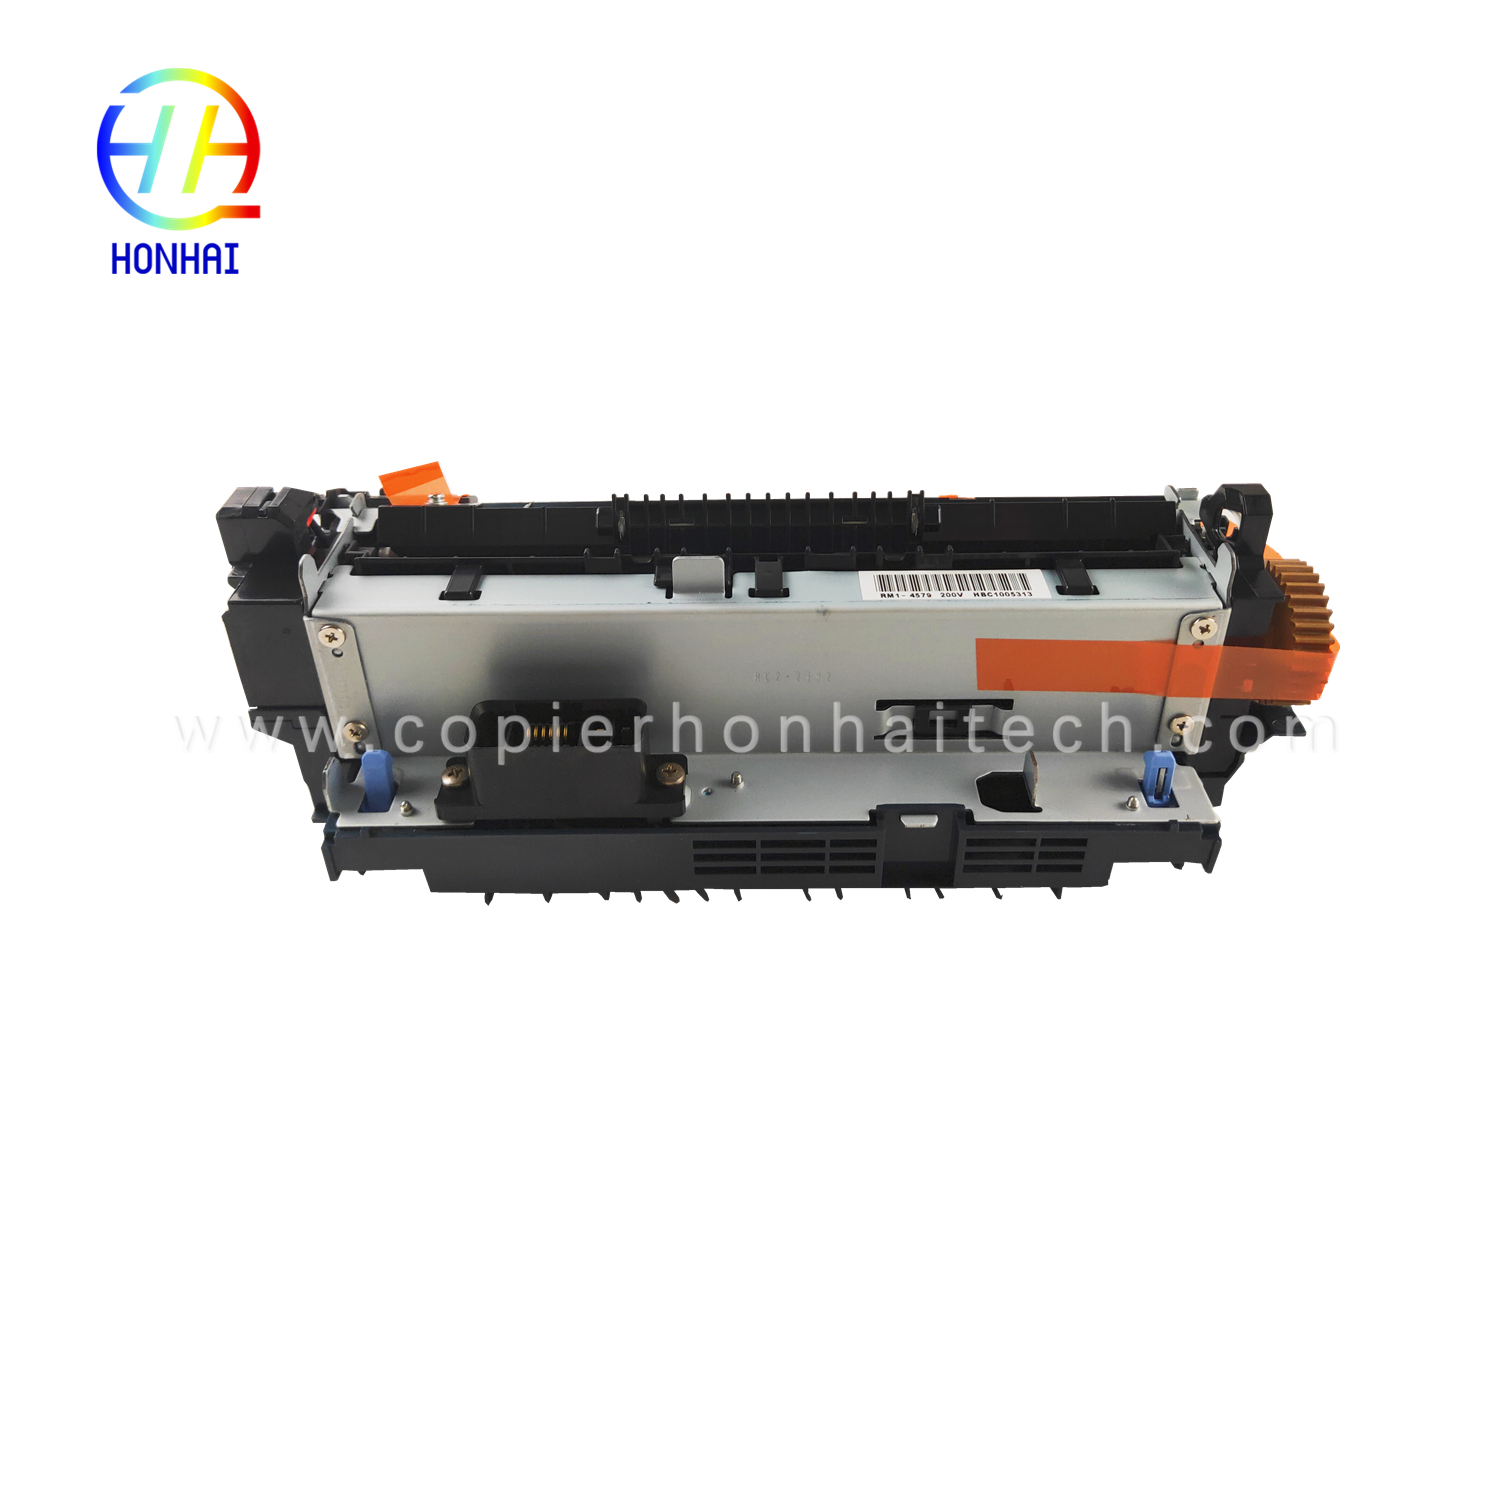 https://www.copierhonhaitech.com/fuser-assemble-for-hp-rm1-4554-000-rm1-4579-000-fuser-unit-product/